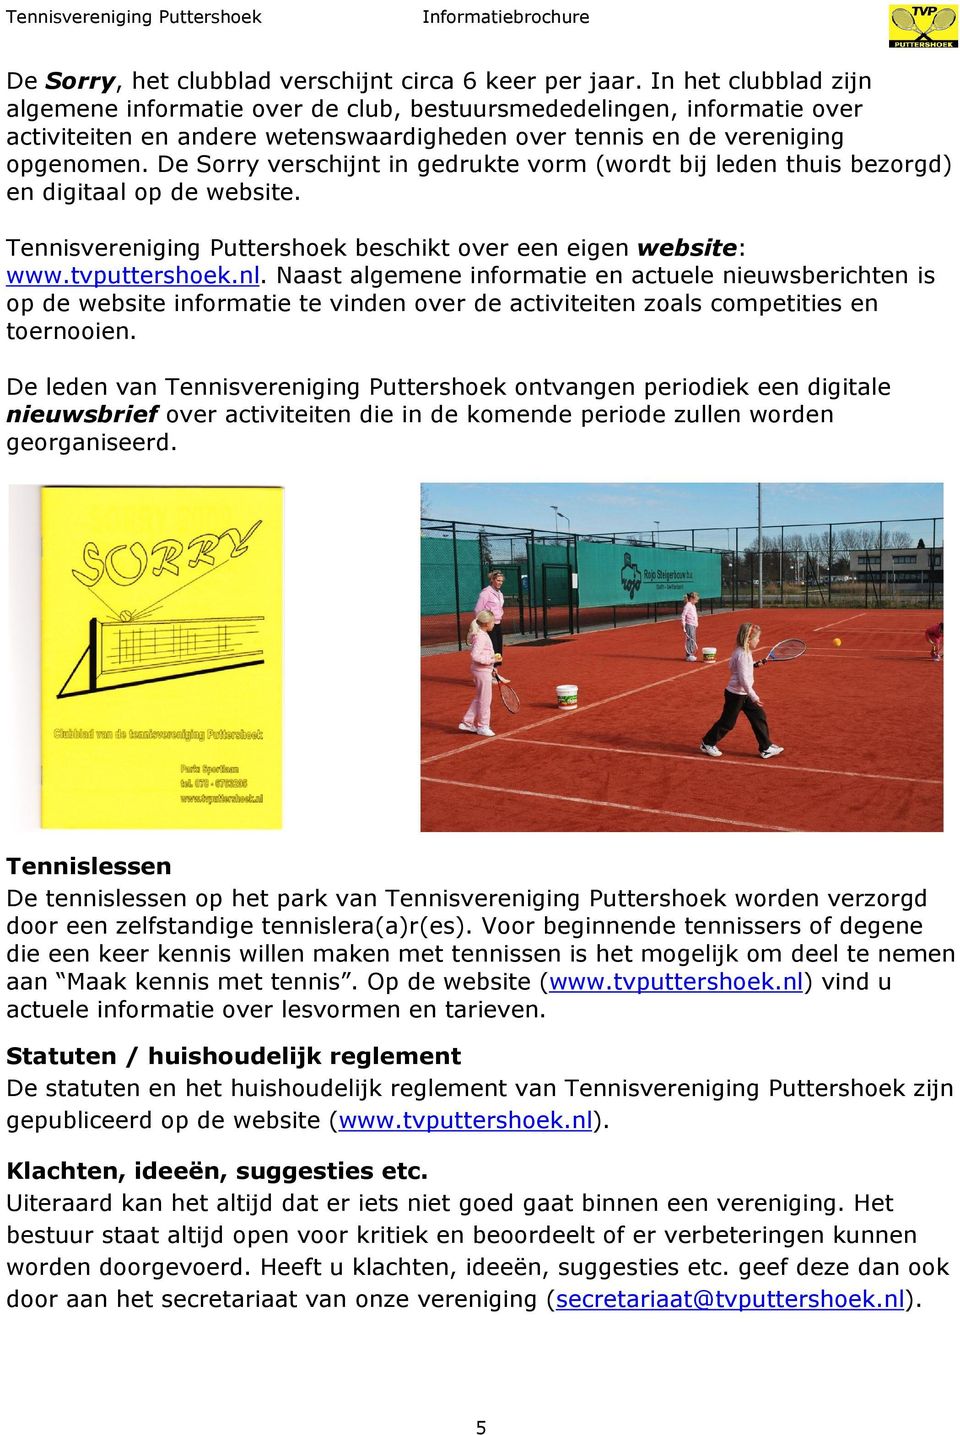 De Sorry verschijnt in gedrukte vorm (wordt bij leden thuis bezorgd) en digitaal op de website. Tennisvereniging Puttershoek beschikt over een eigen website: www.tvputtershoek.nl.